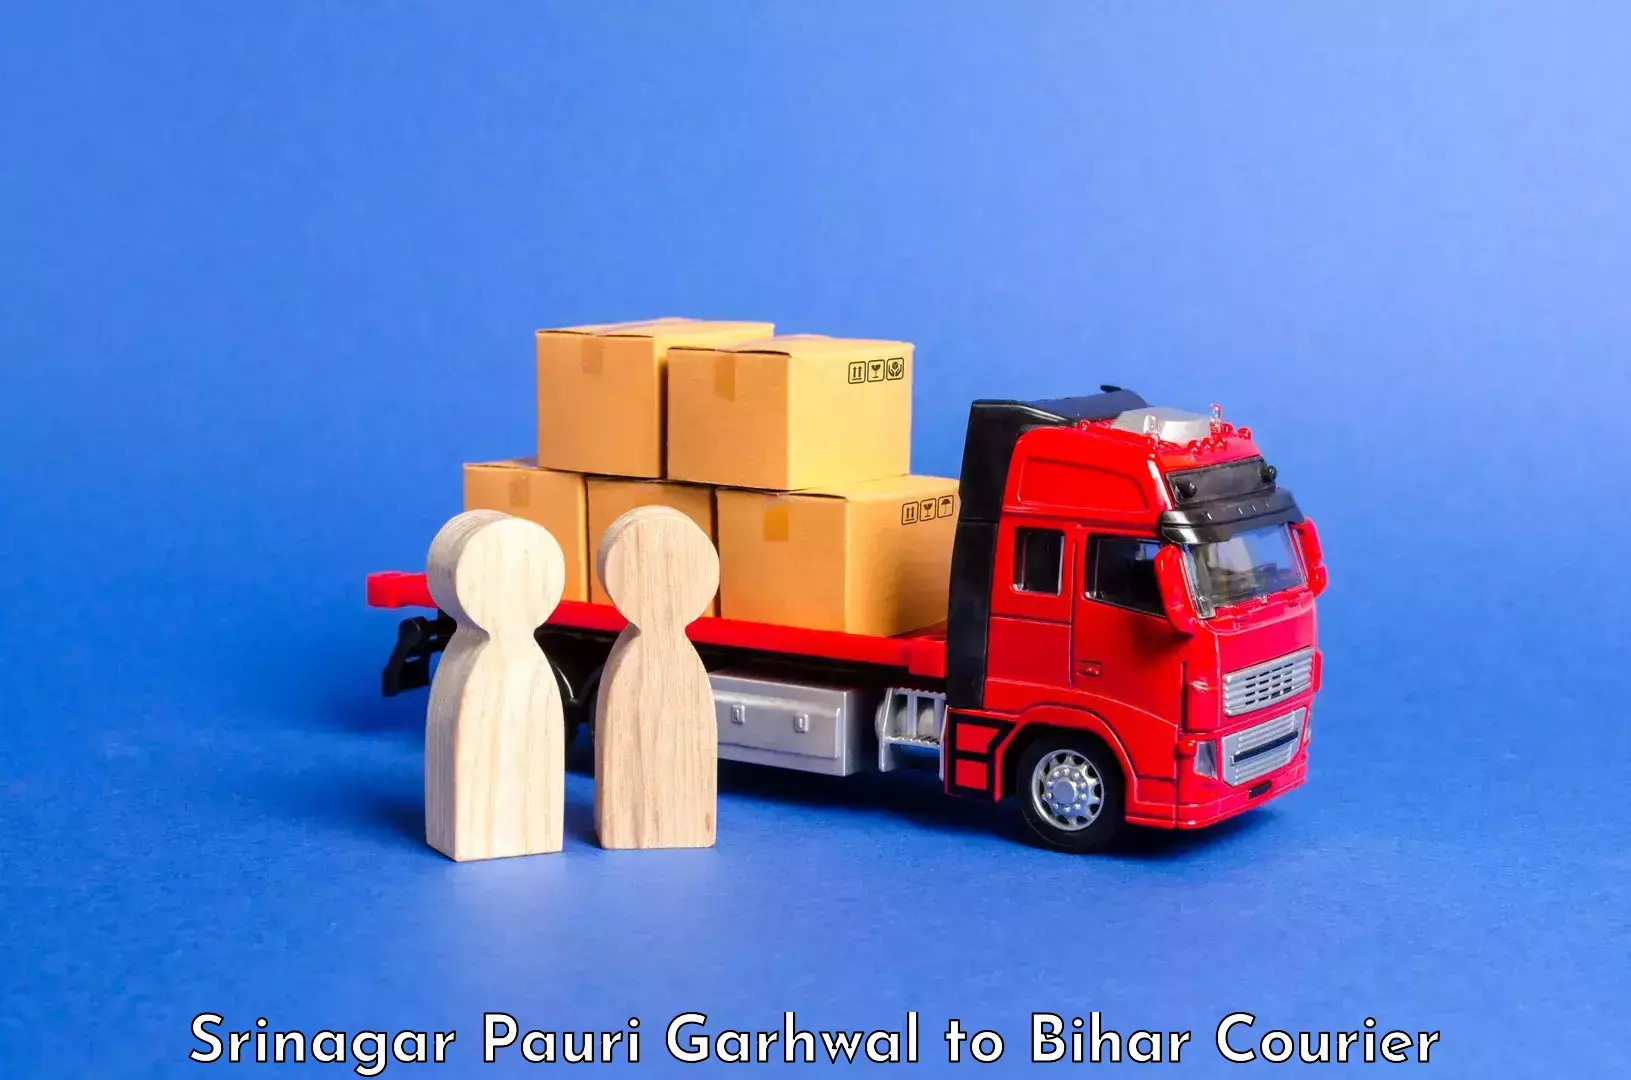 Luggage delivery estimate Srinagar Pauri Garhwal to Khodaganj